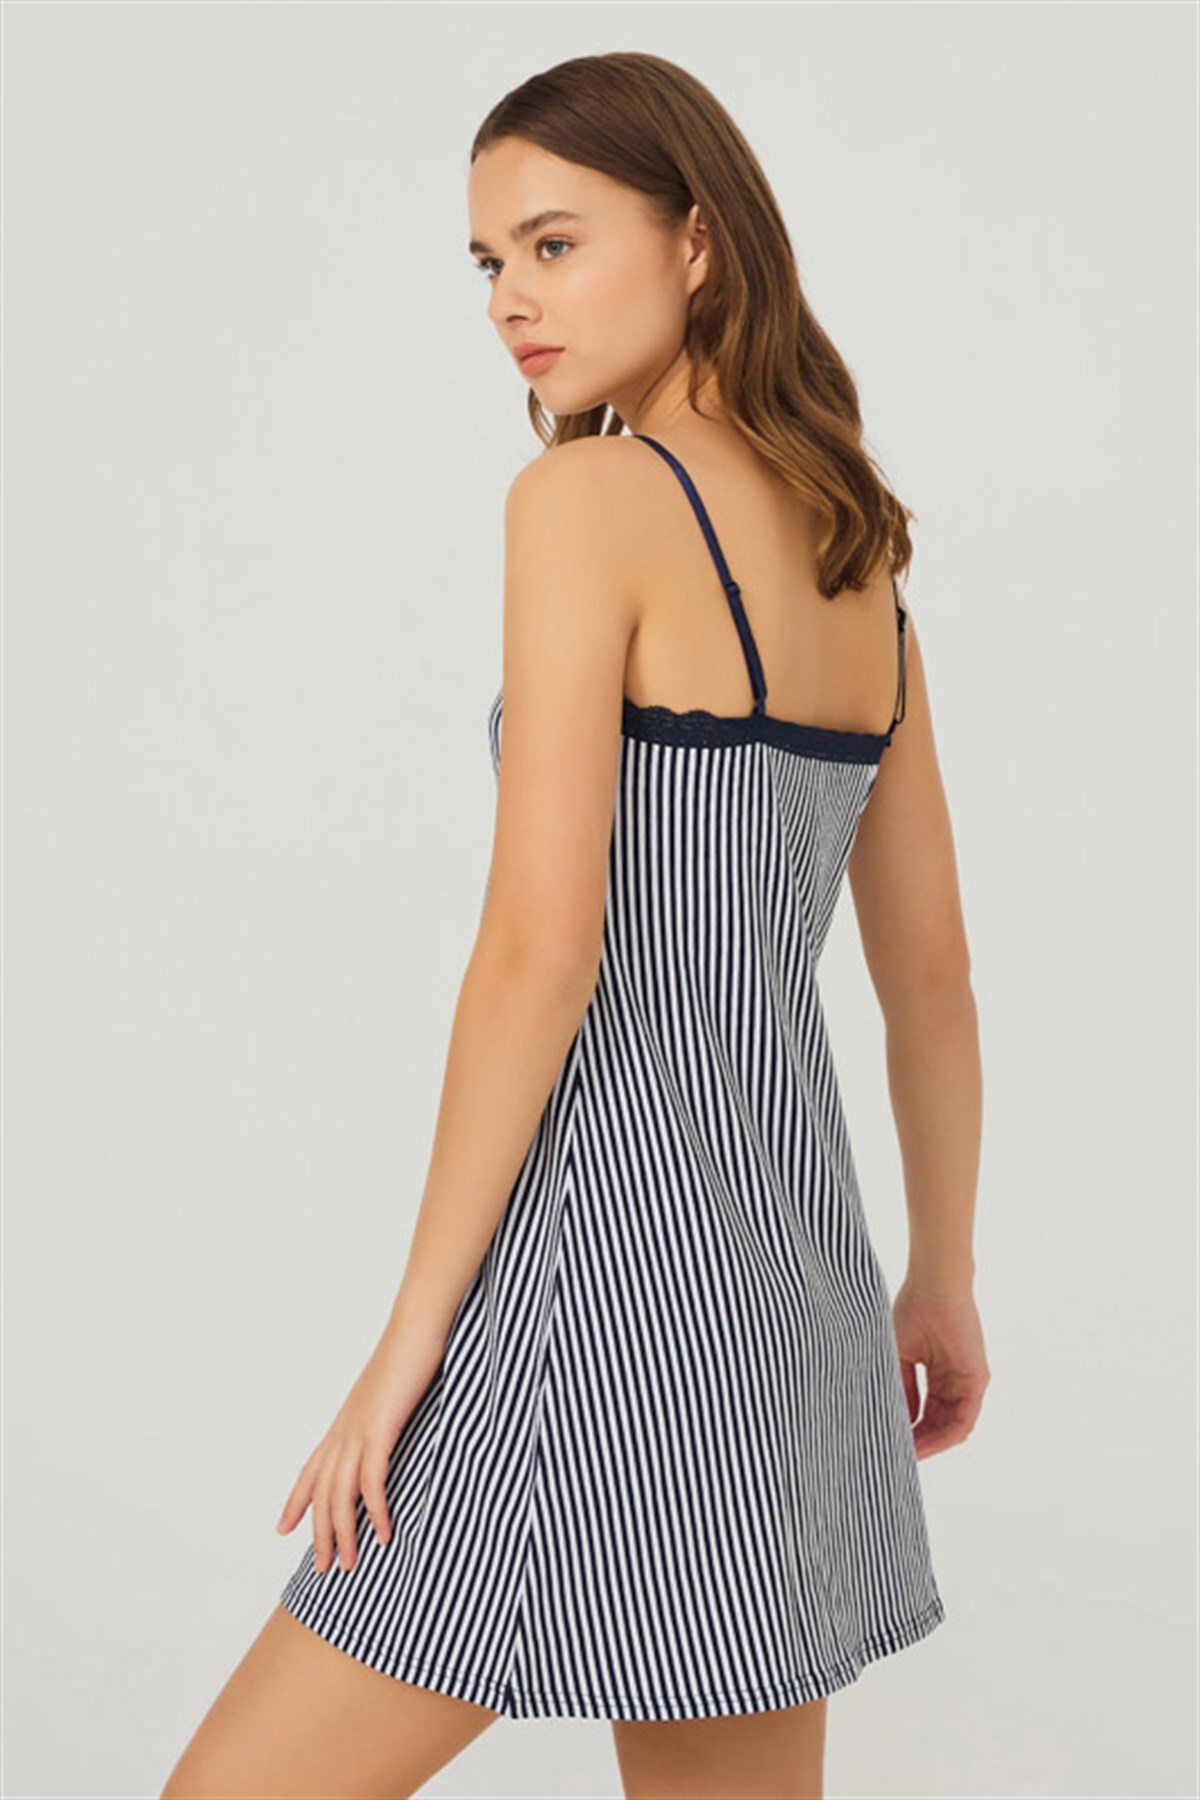 navy-blue-white-striped-cotton-nightwear-with-adjustable-strap-ch1406-emp328-1-1